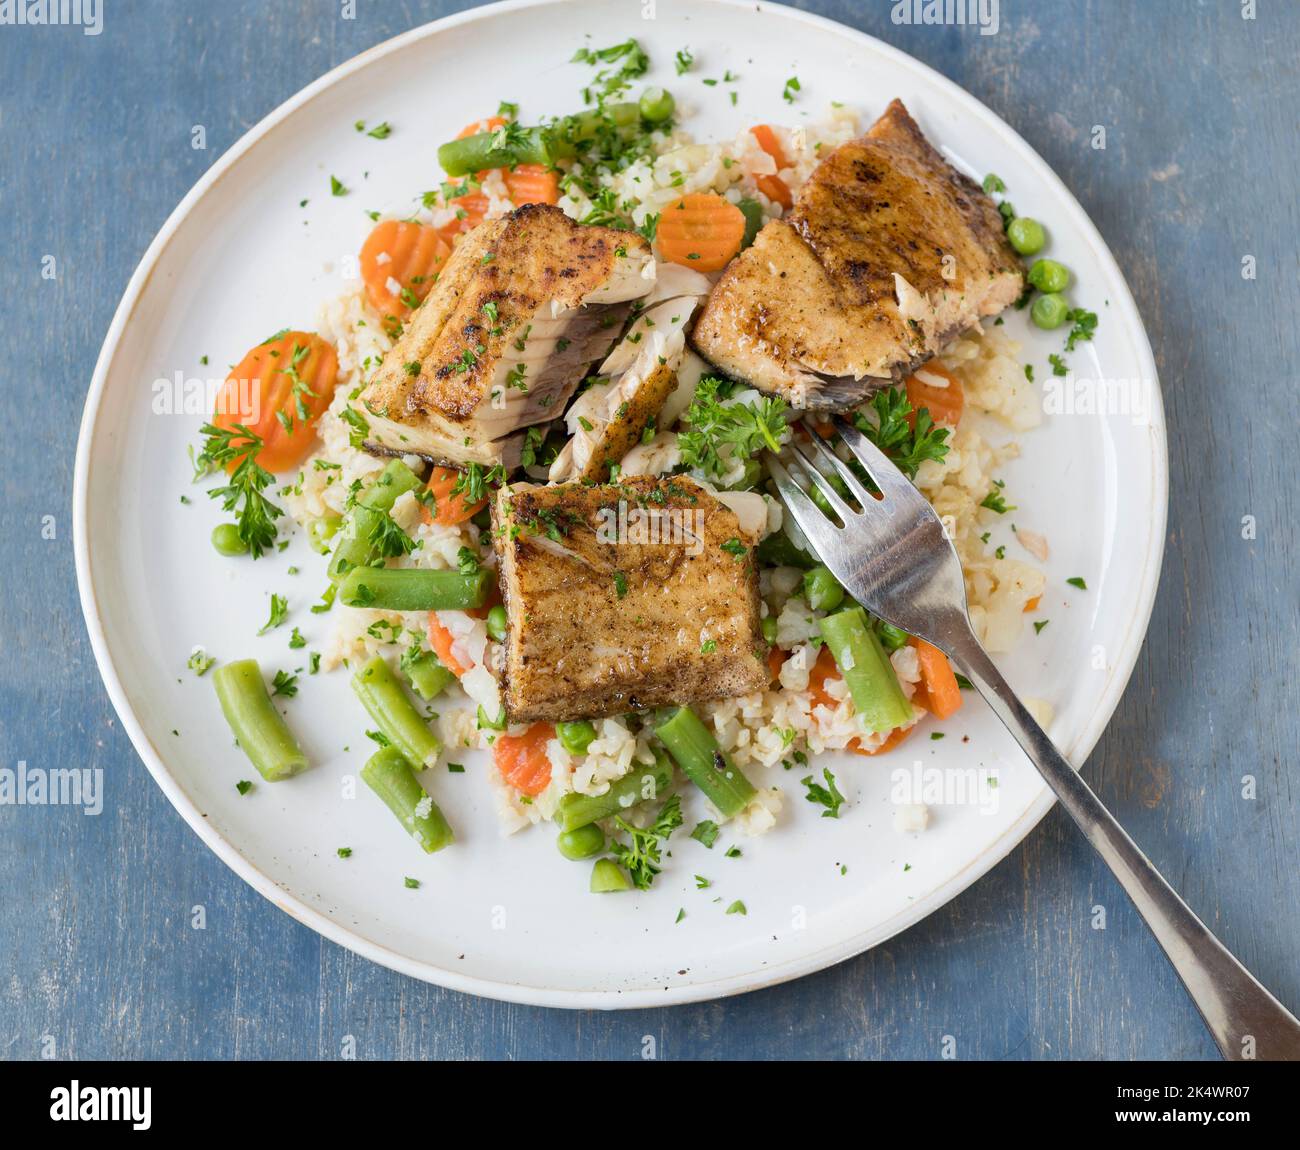 Gesundes Fischessen oder Mittagessen mit gebratenem Lachs, Gemüse und braunem Reis. Stockfoto